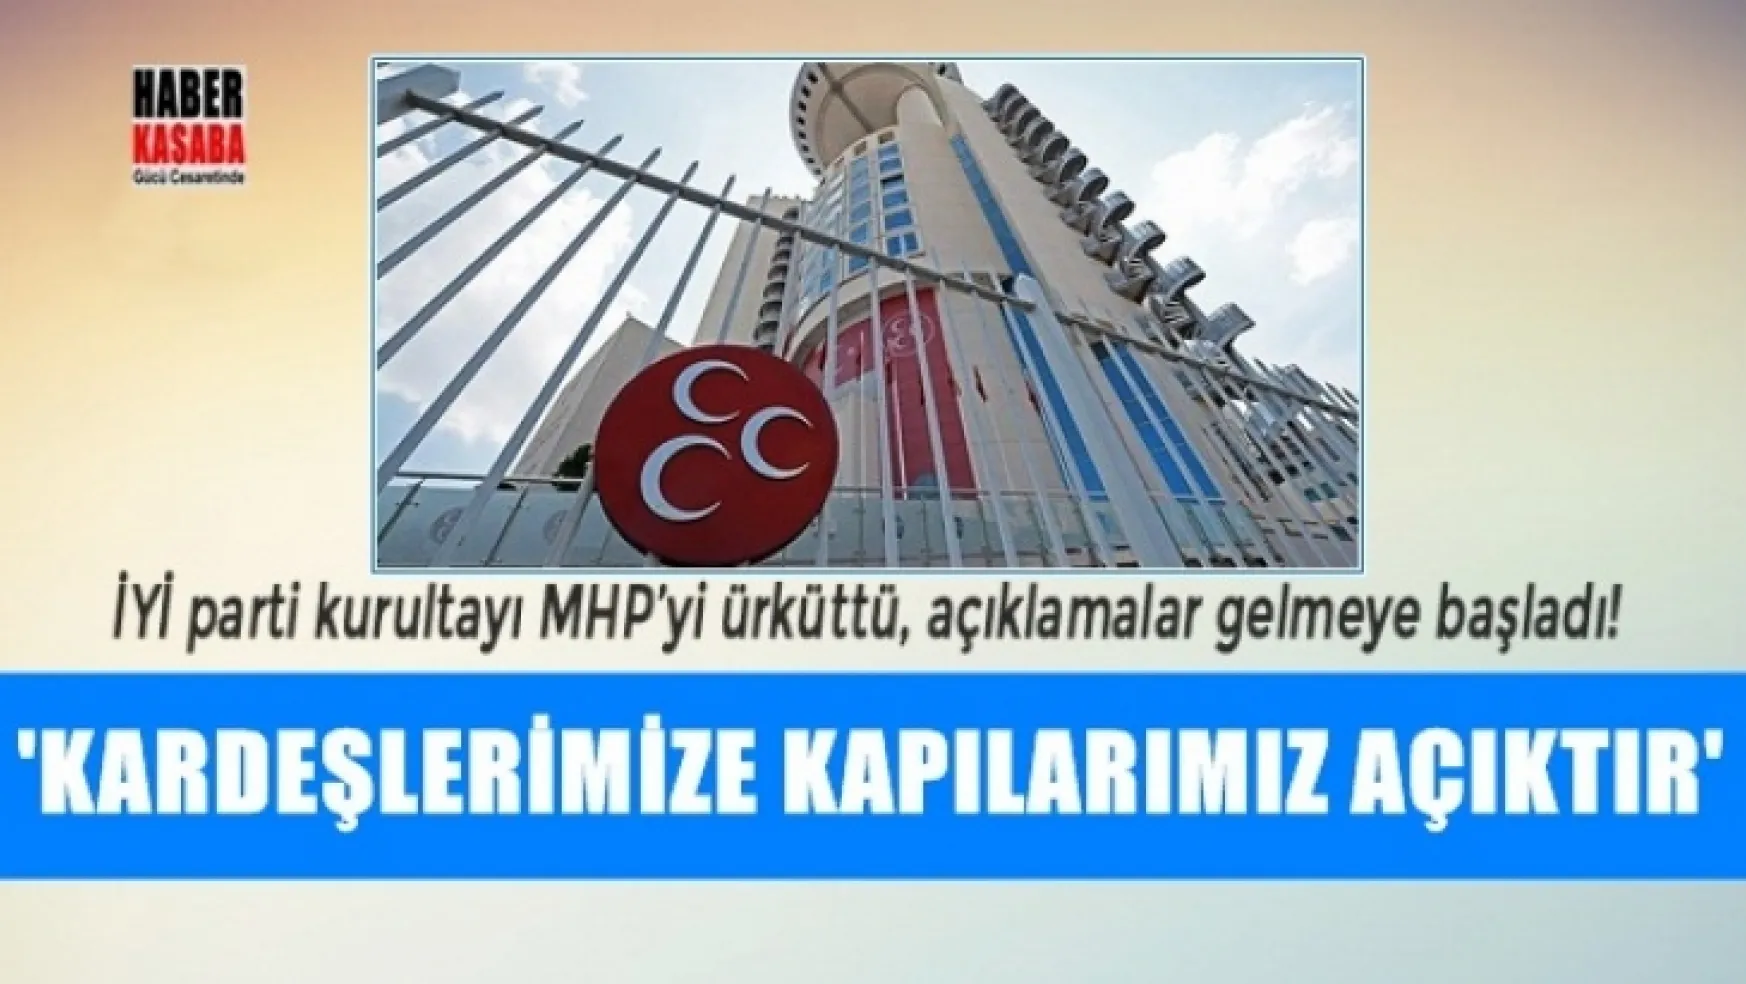 İYİ parti Kongresi MHP'yi ürküttü, açıklamalar gelmeye başladı!